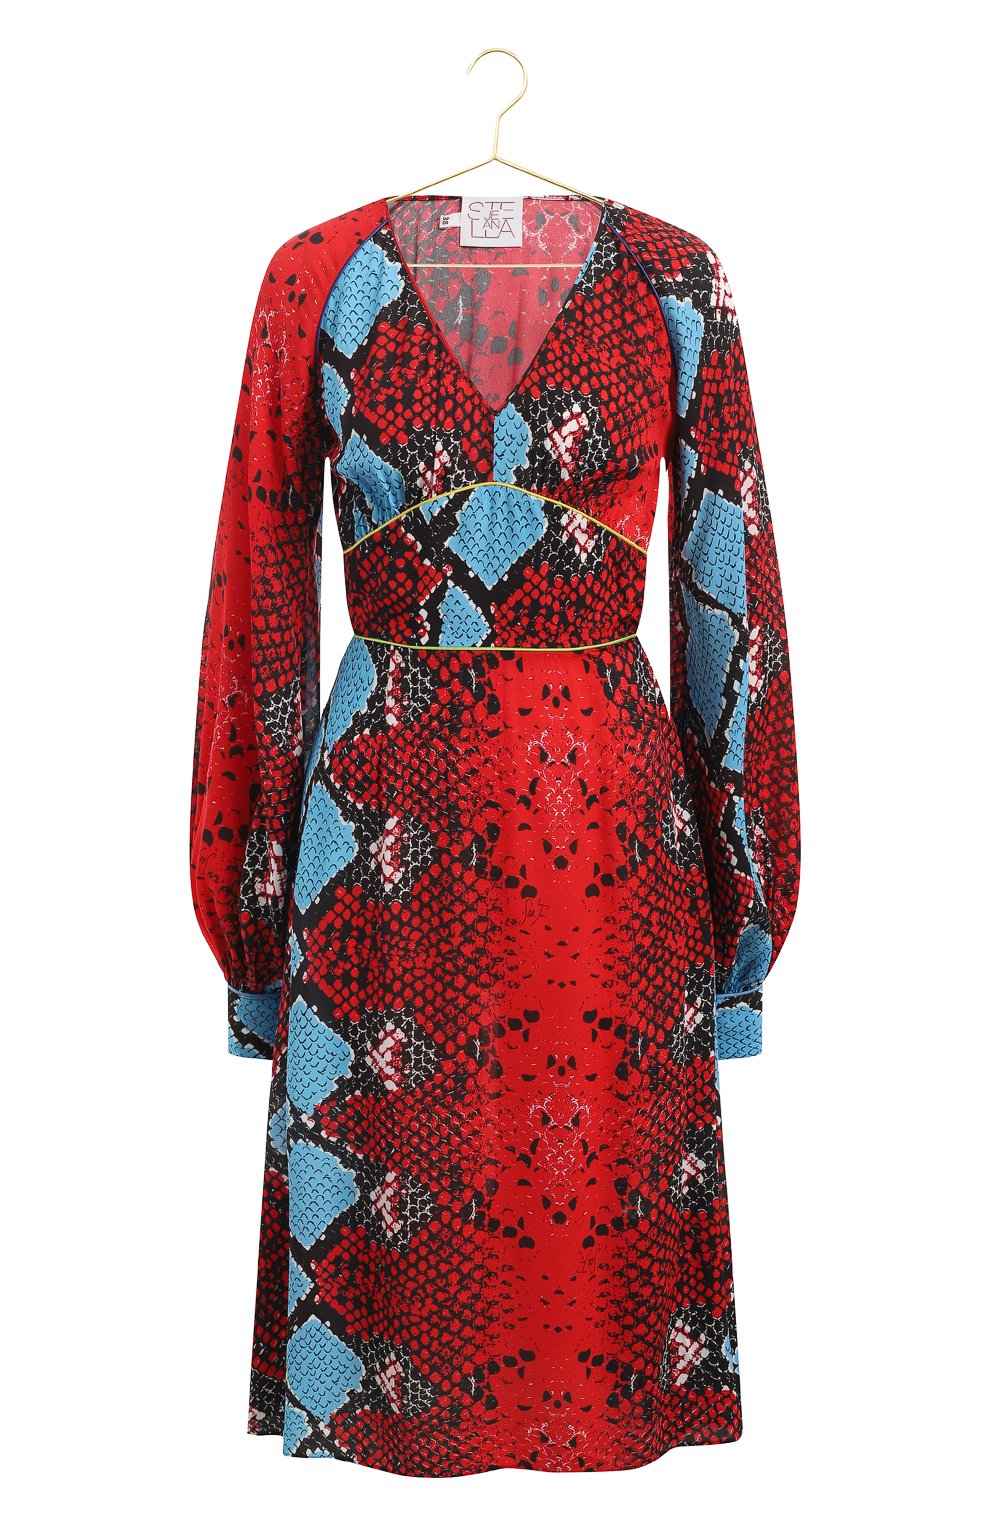 Платье из вискозы | Stella Jean | Красный - 1